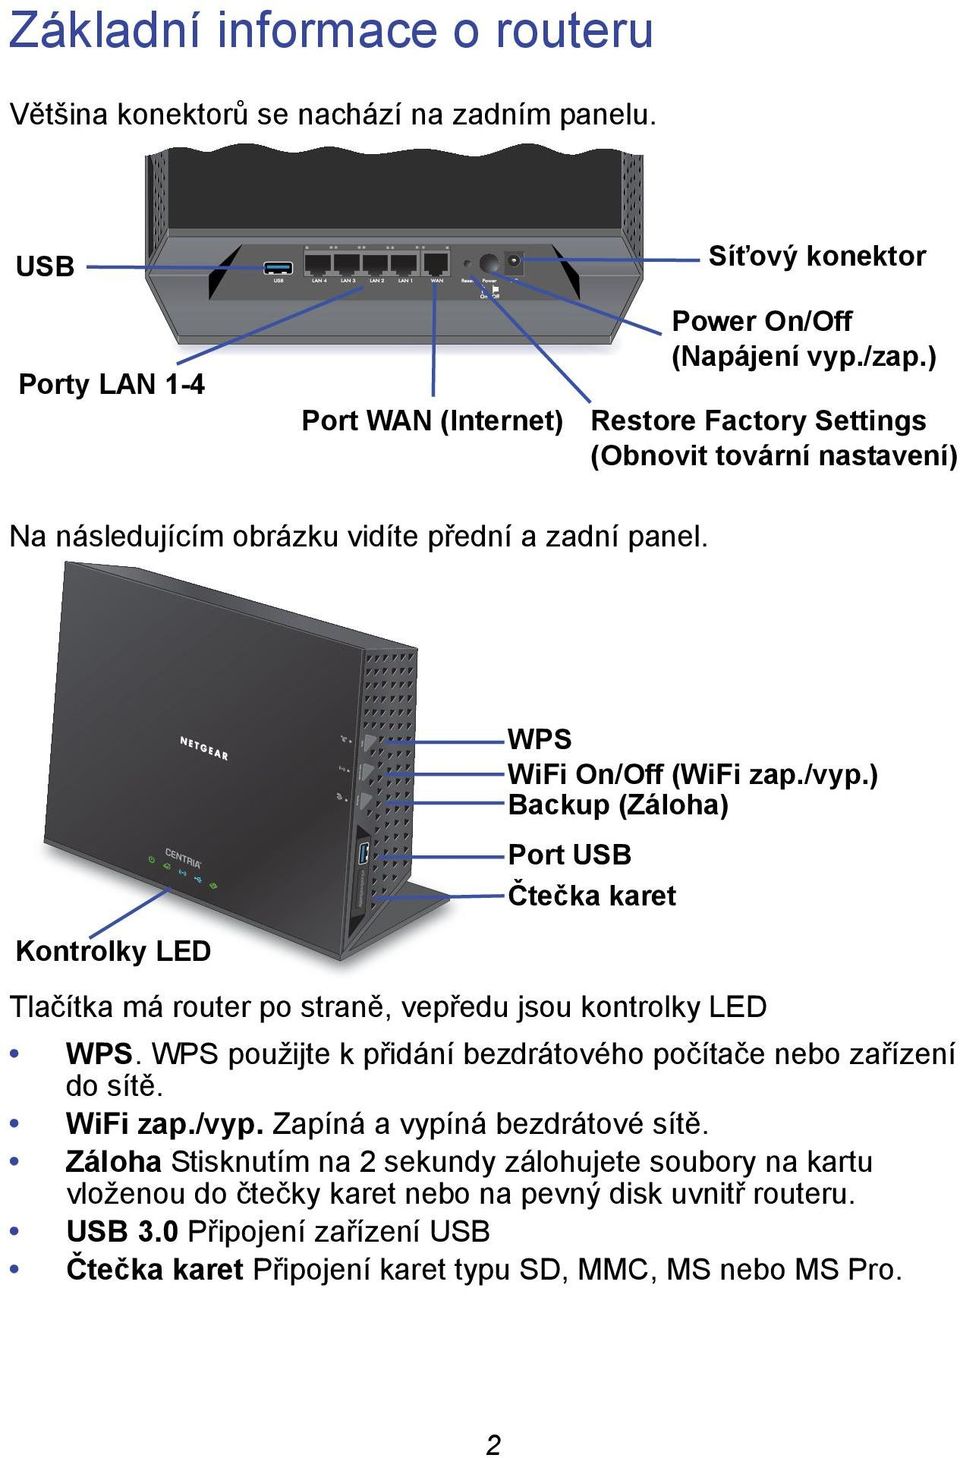 ) Backup (Záloha) Port USB Čtečka karet Tlačítka má router po straně, vepředu jsou kontrolky LED WPS. WPS použijte k přidání bezdrátového počítače nebo zařízení do sítě. WiFi zap./vyp.